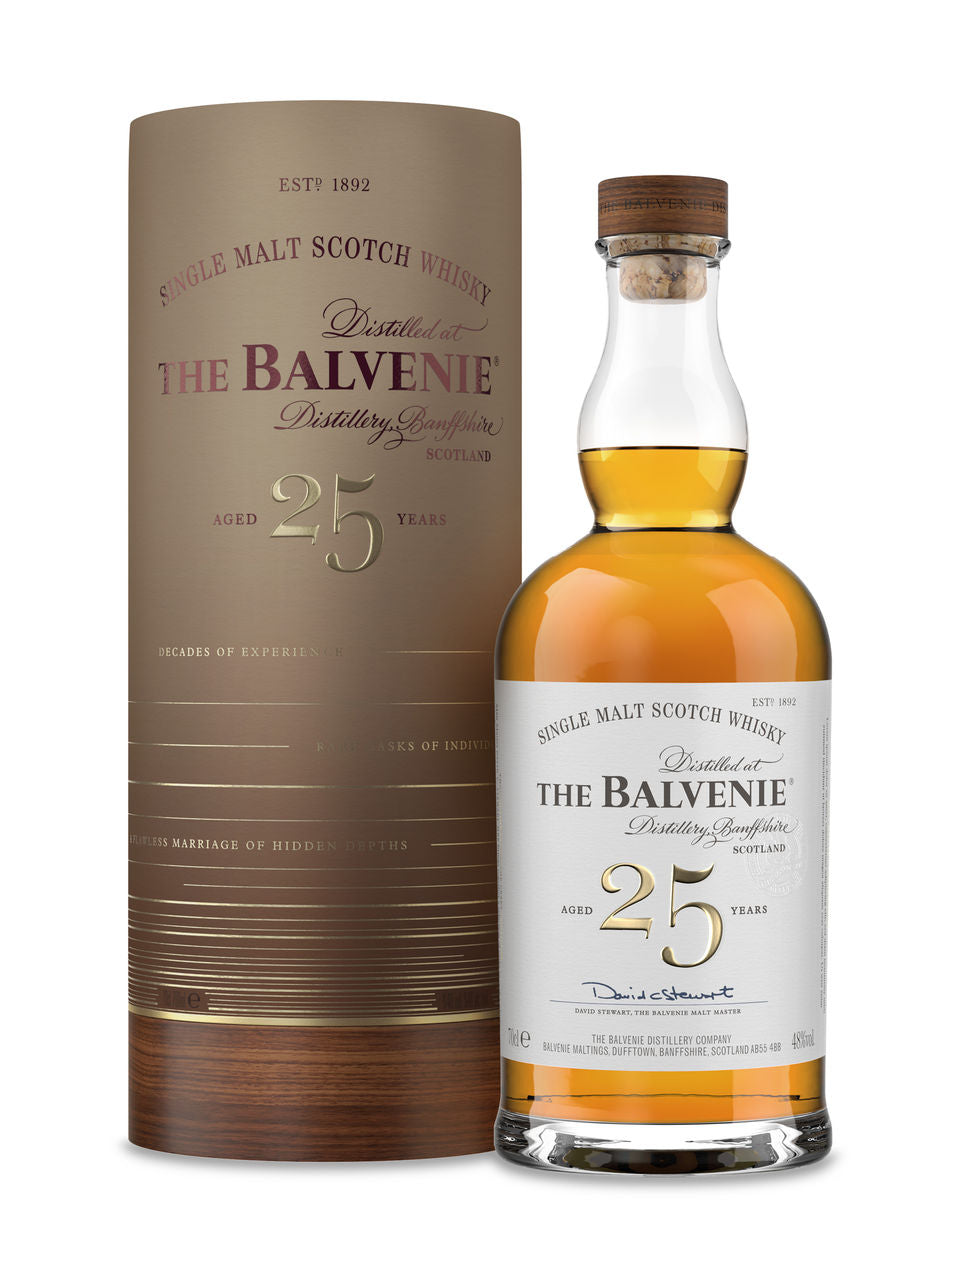 The Balvenie 25 Year Old 700 ml bottle